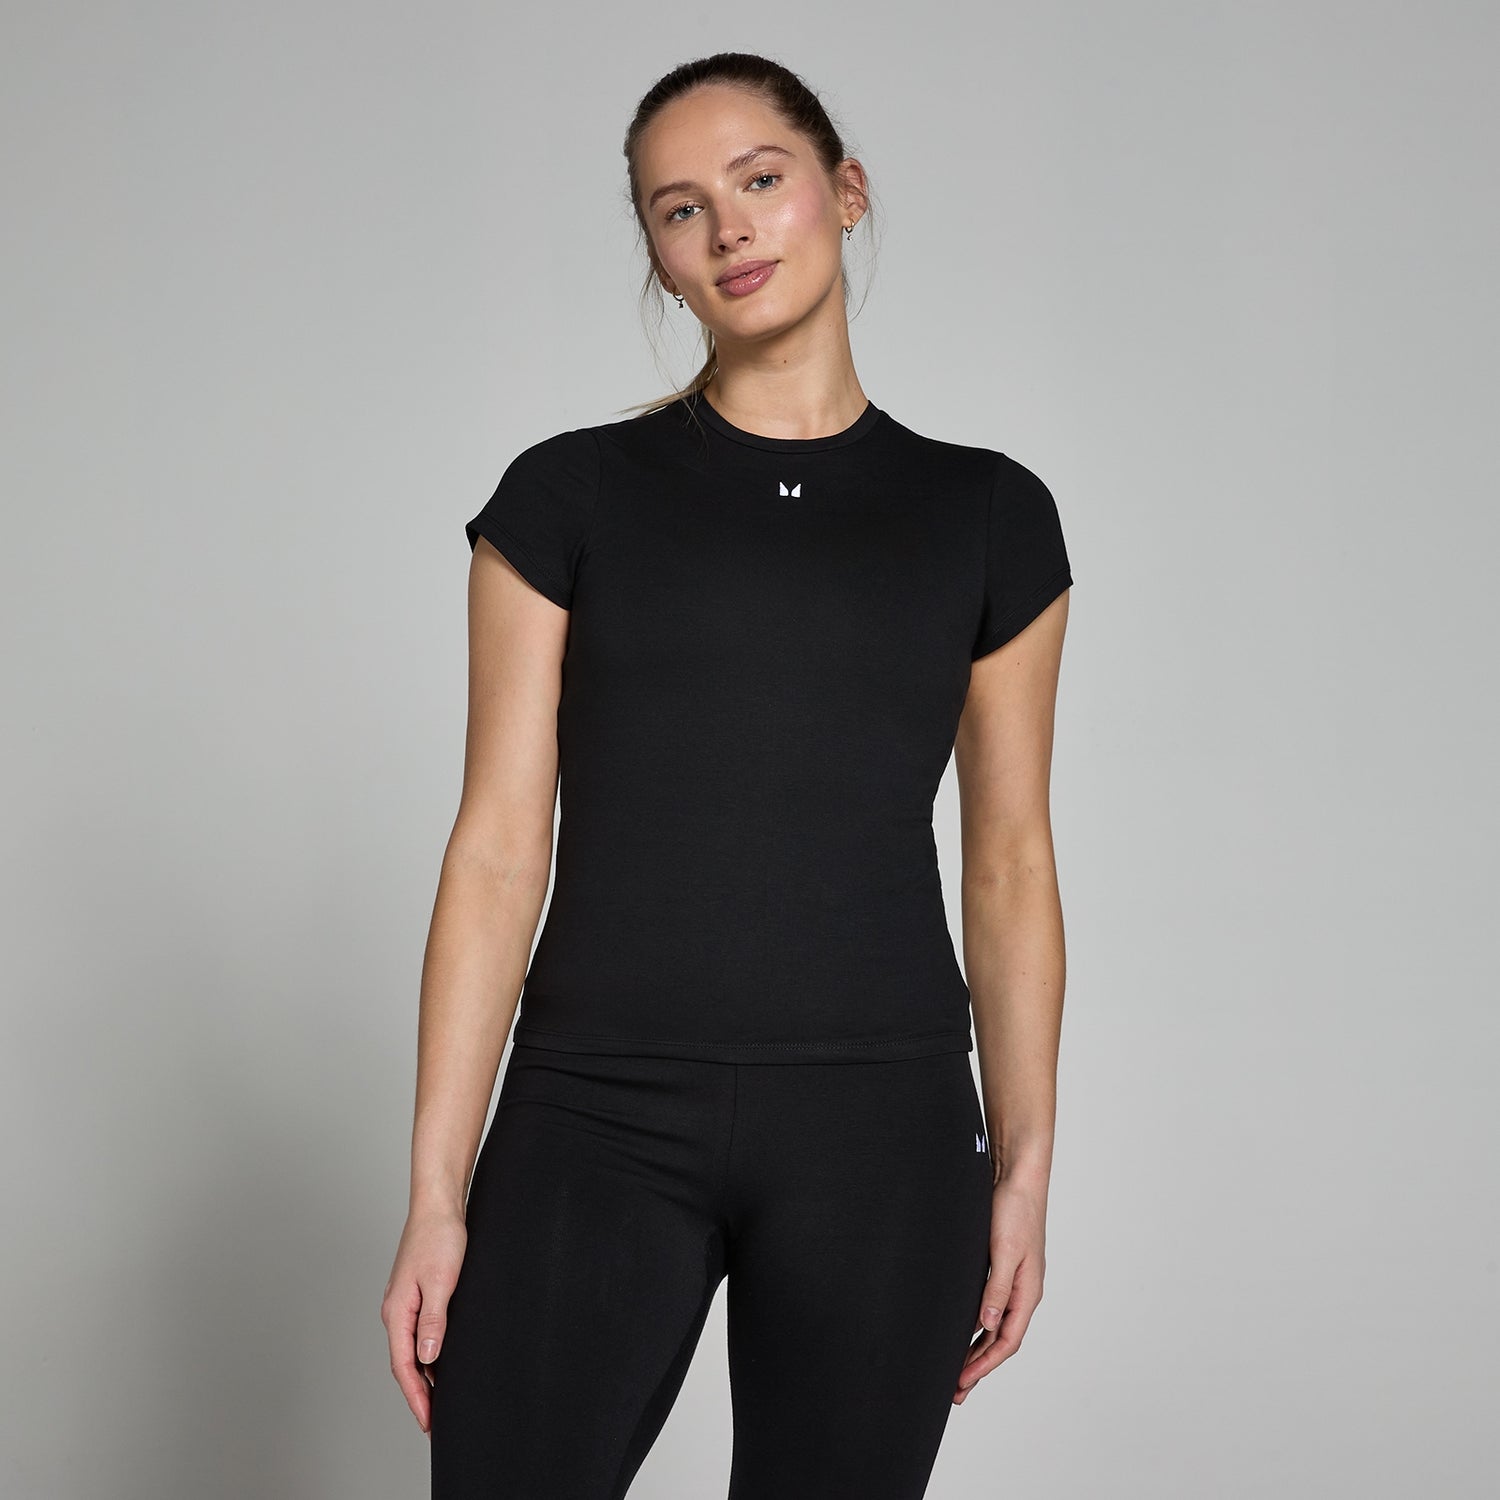 Женская облегающая футболка с короткими рукавами MP Basics — черный цвет - XXS